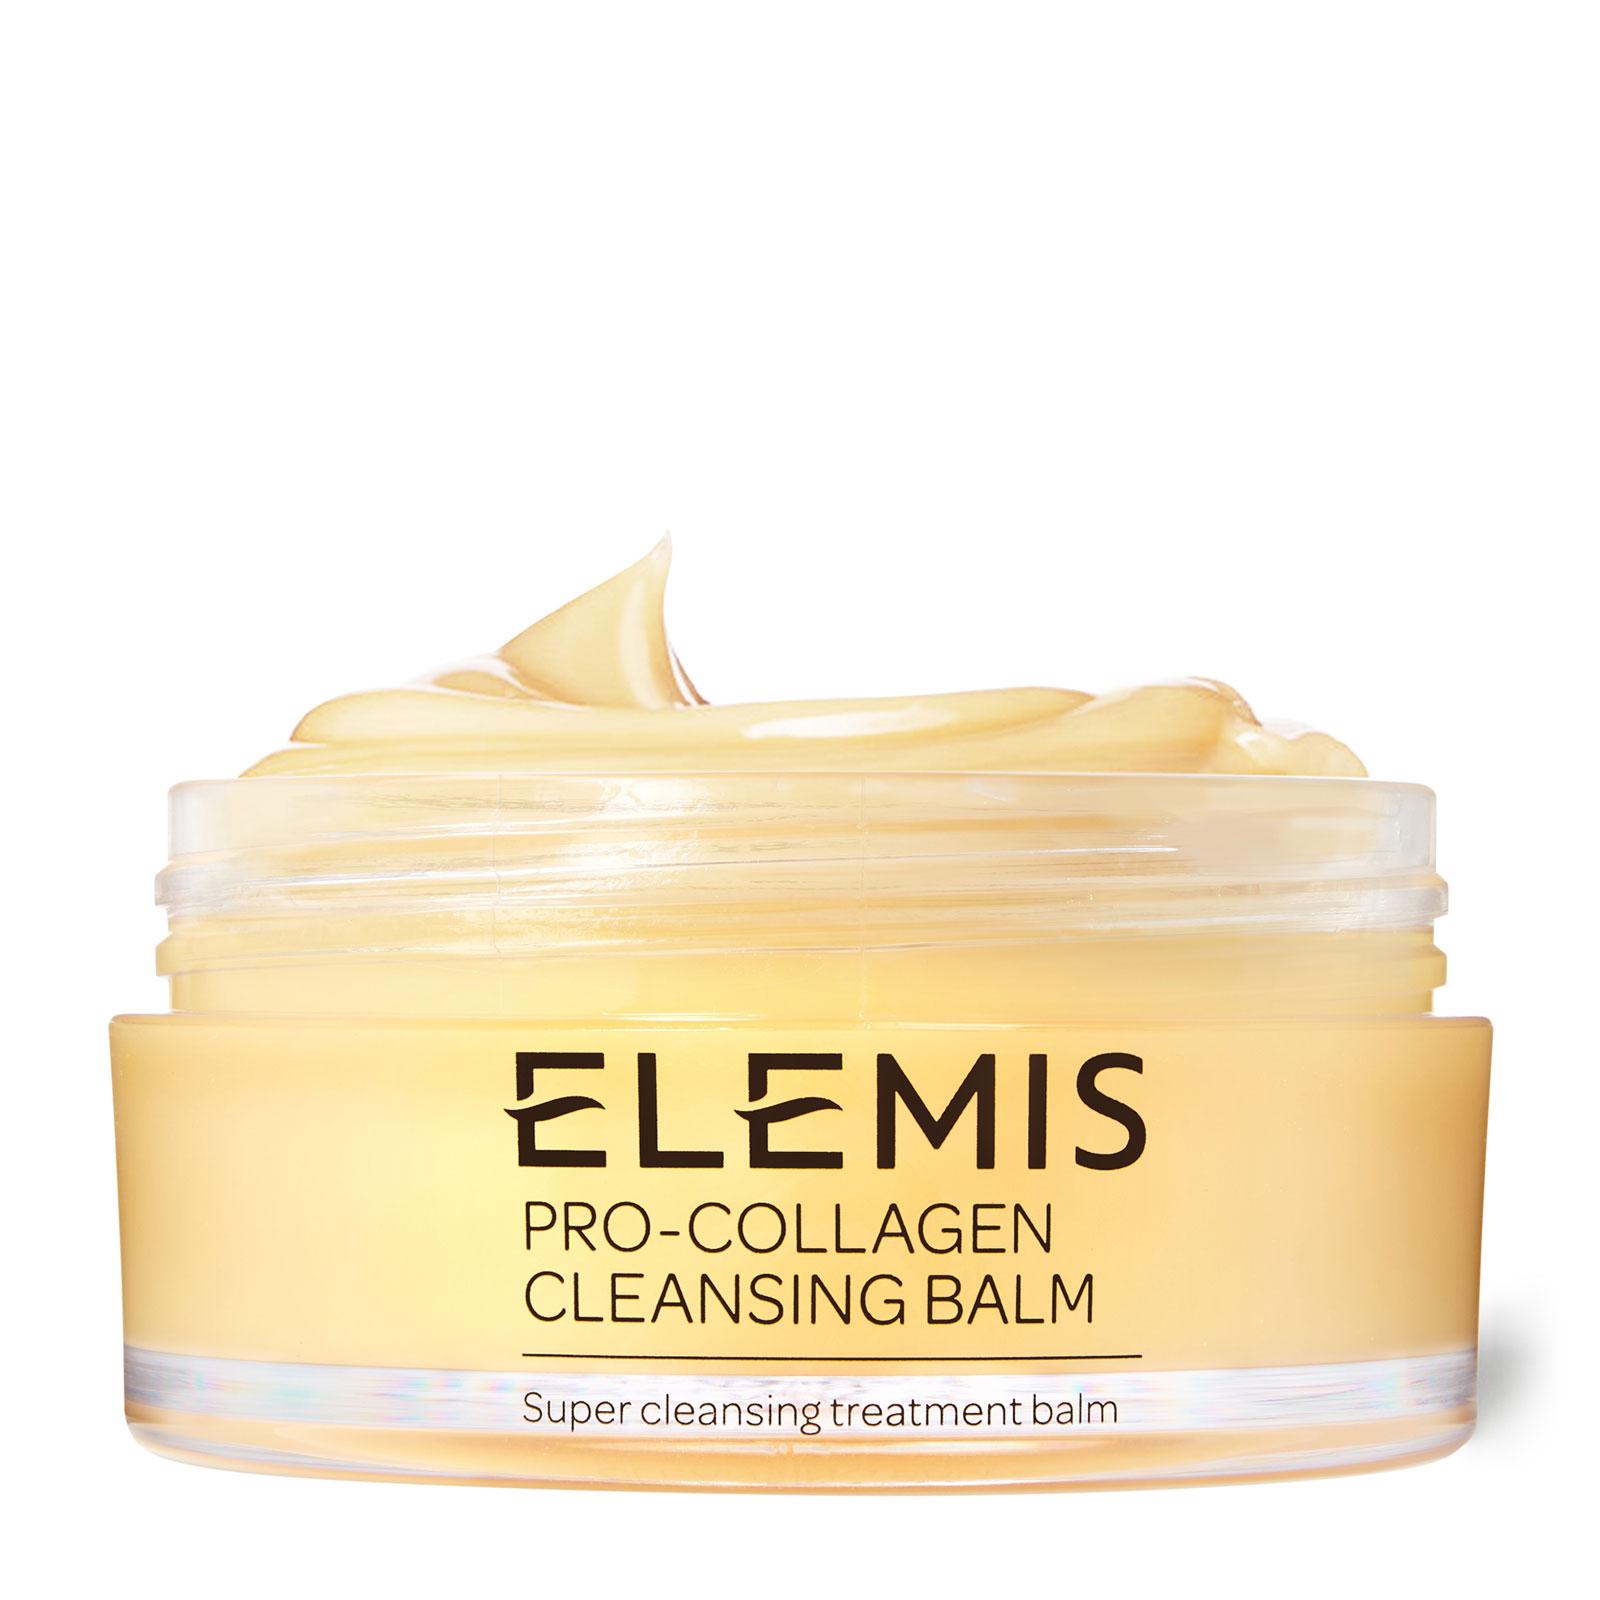 ELEMIS Pro-Collagen Cleansing Balm 100g £44.00